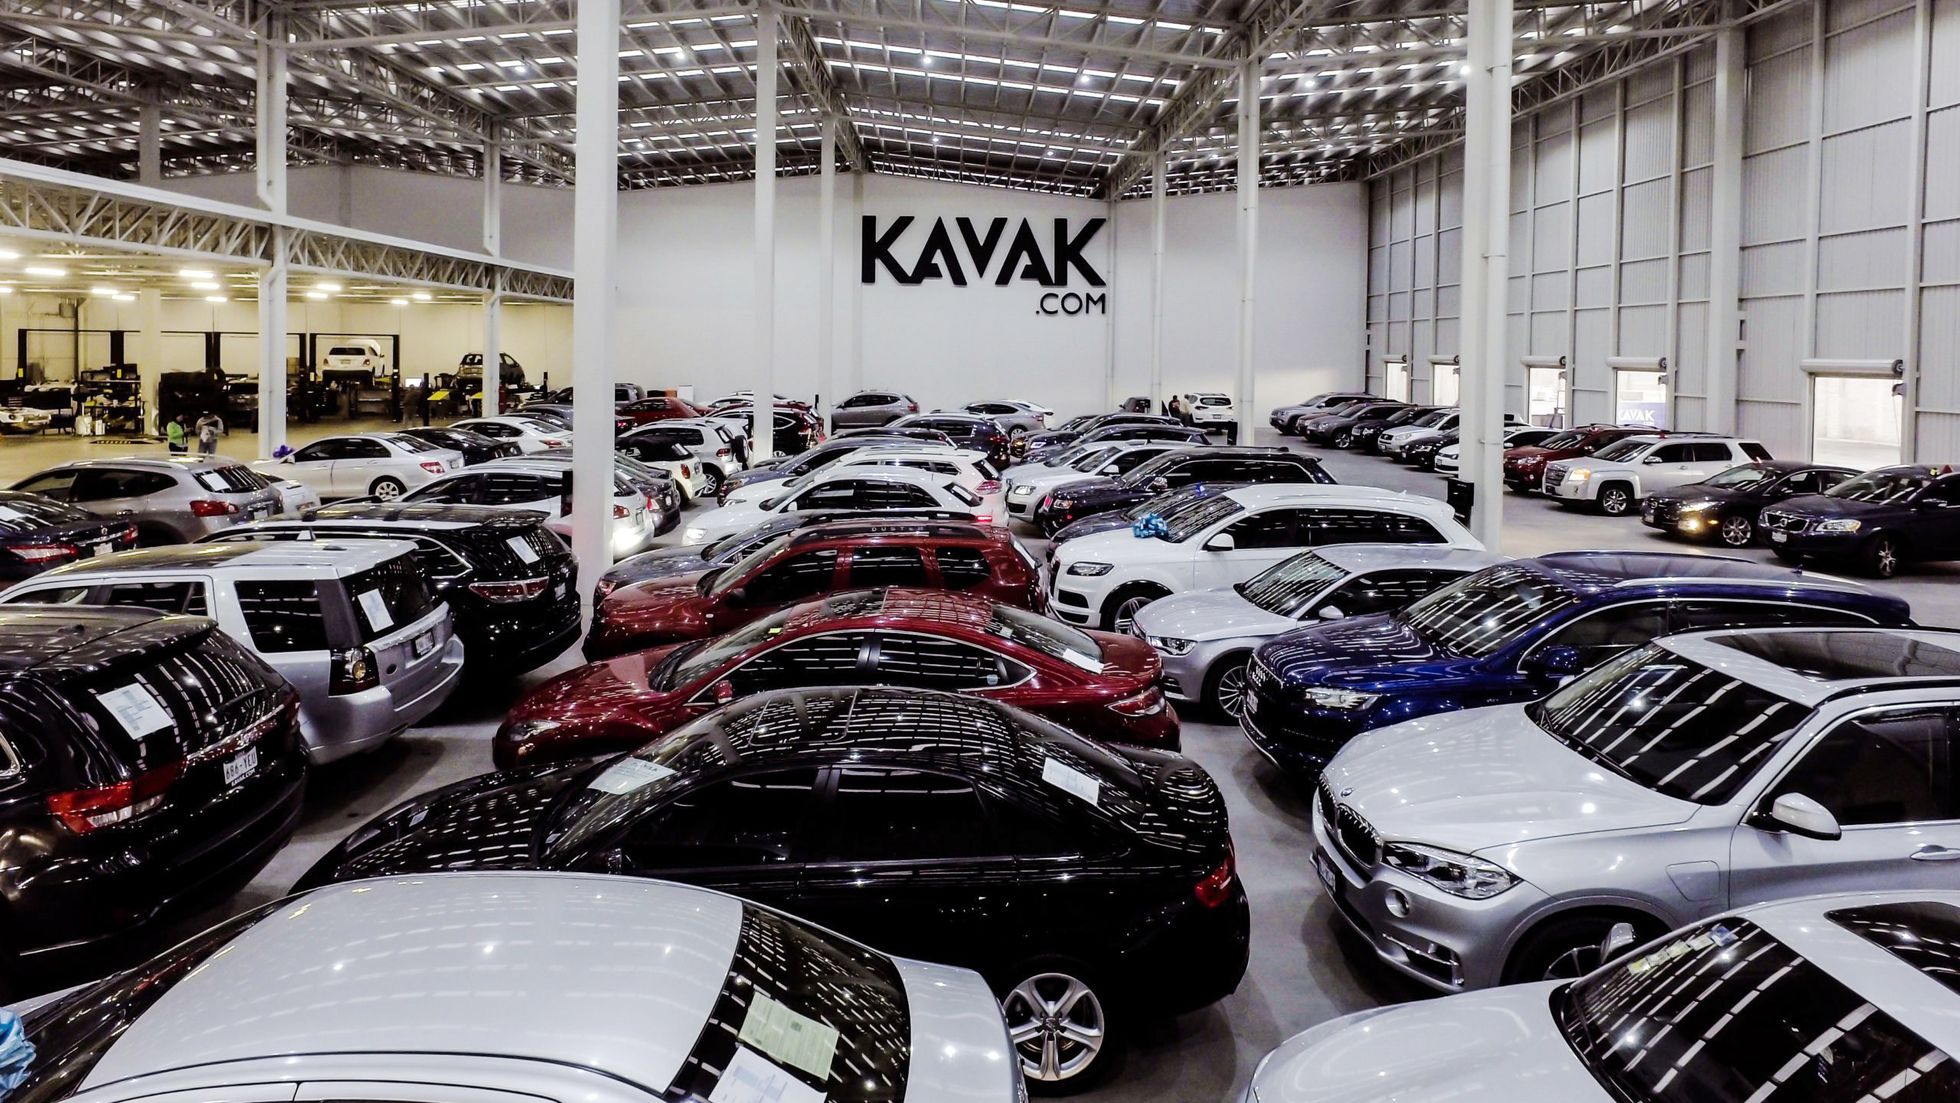 El unicornio Kavak levantó 700 millones de dólares y se convierte en la segunda startup más valiosa de América Latina